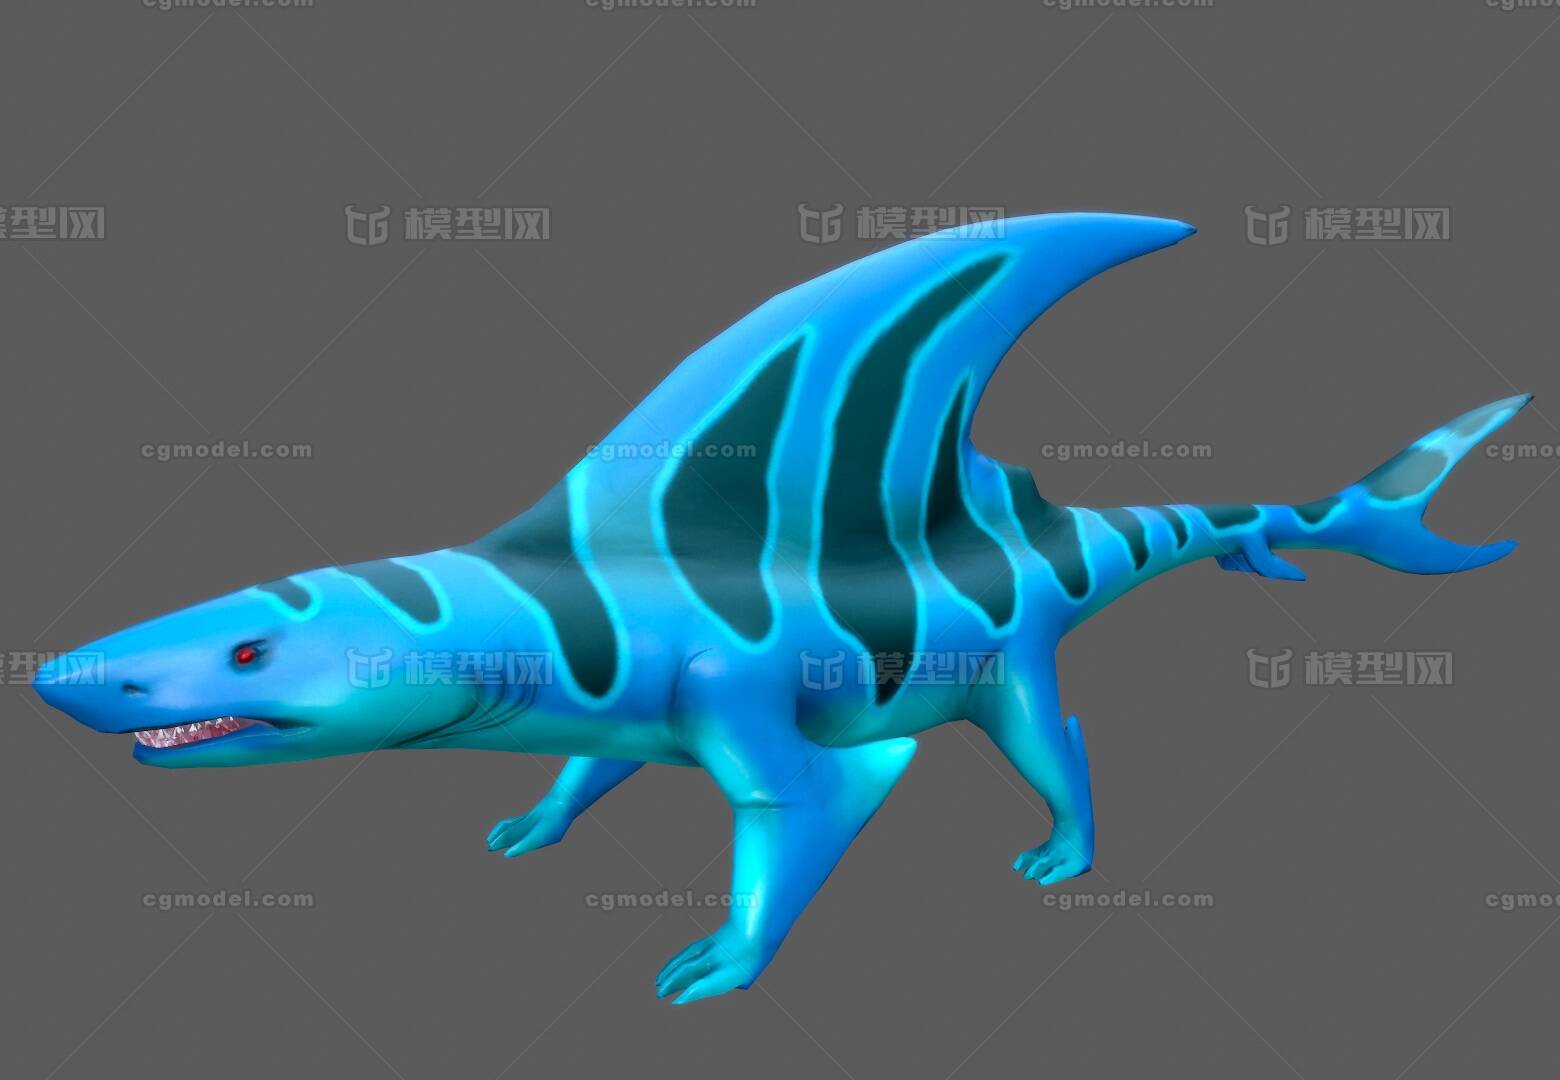 次时代 变异蜥蜴鲨 鲨鱼 蓝色蜥蜴鲨  变异物种